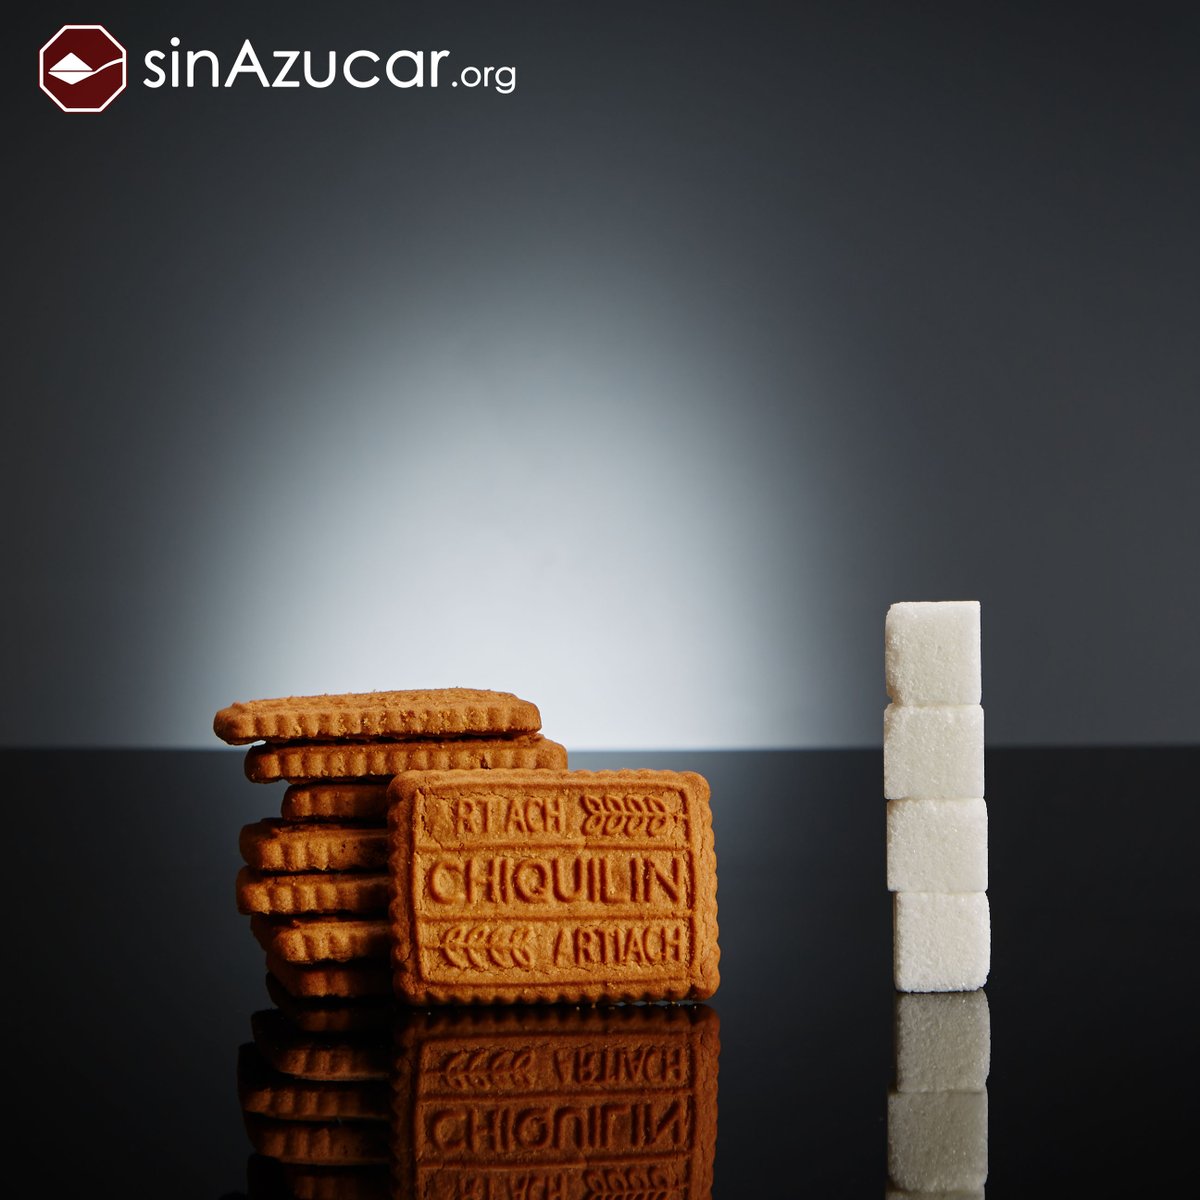 sinAzucar.org on X: 5 galletas Fontaneda Digestive Chocolate (86g) tienen  25,37g de azúcar, equivalente a 6,34 terrones.  / X